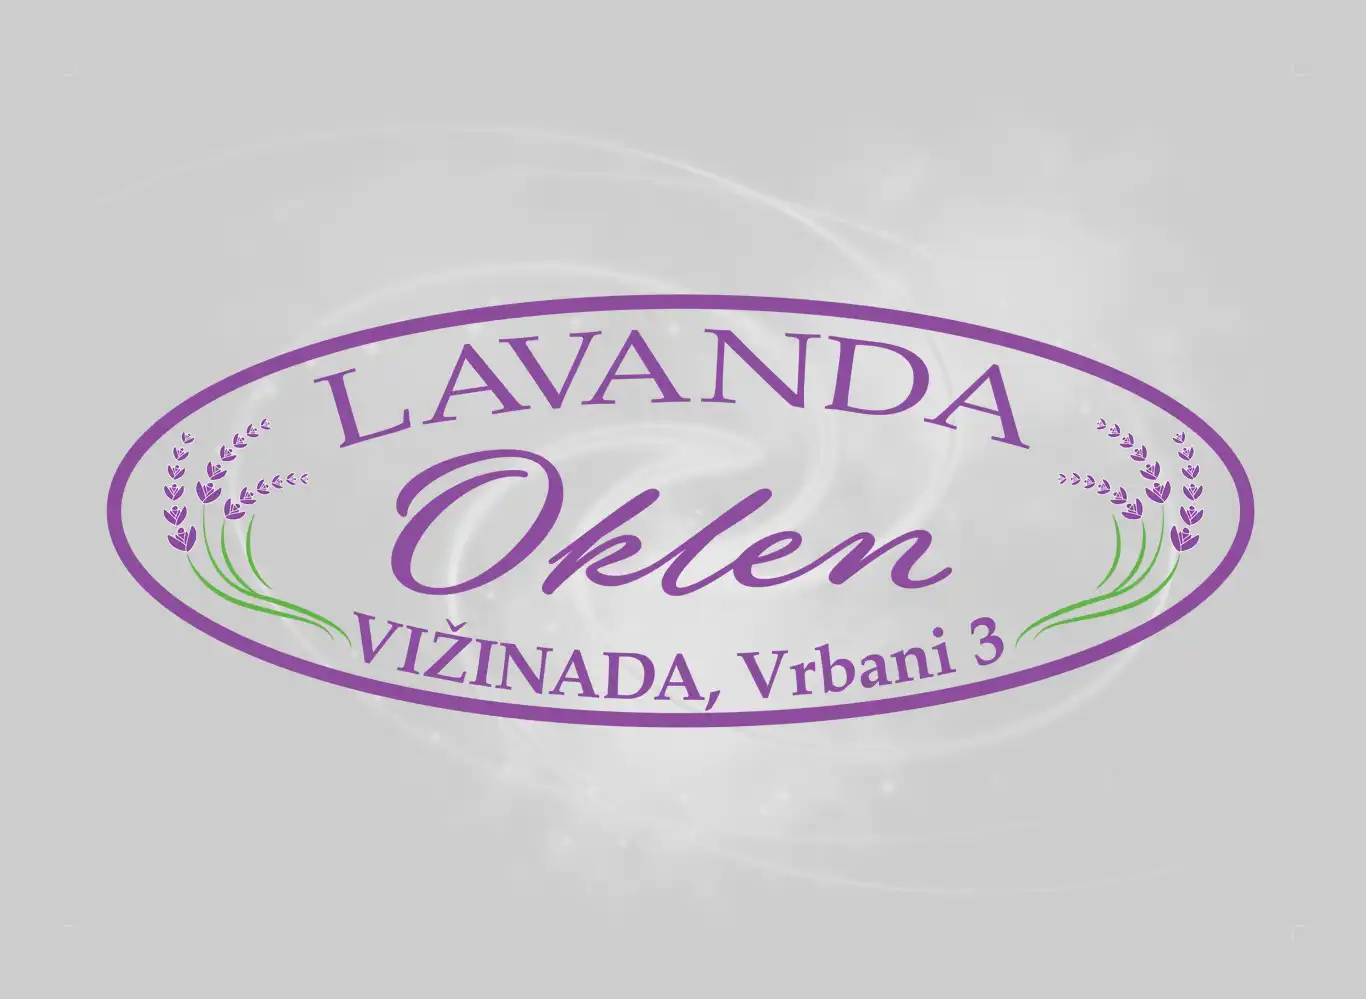 Dizajn logotipa i brenda Lavanda Oklen